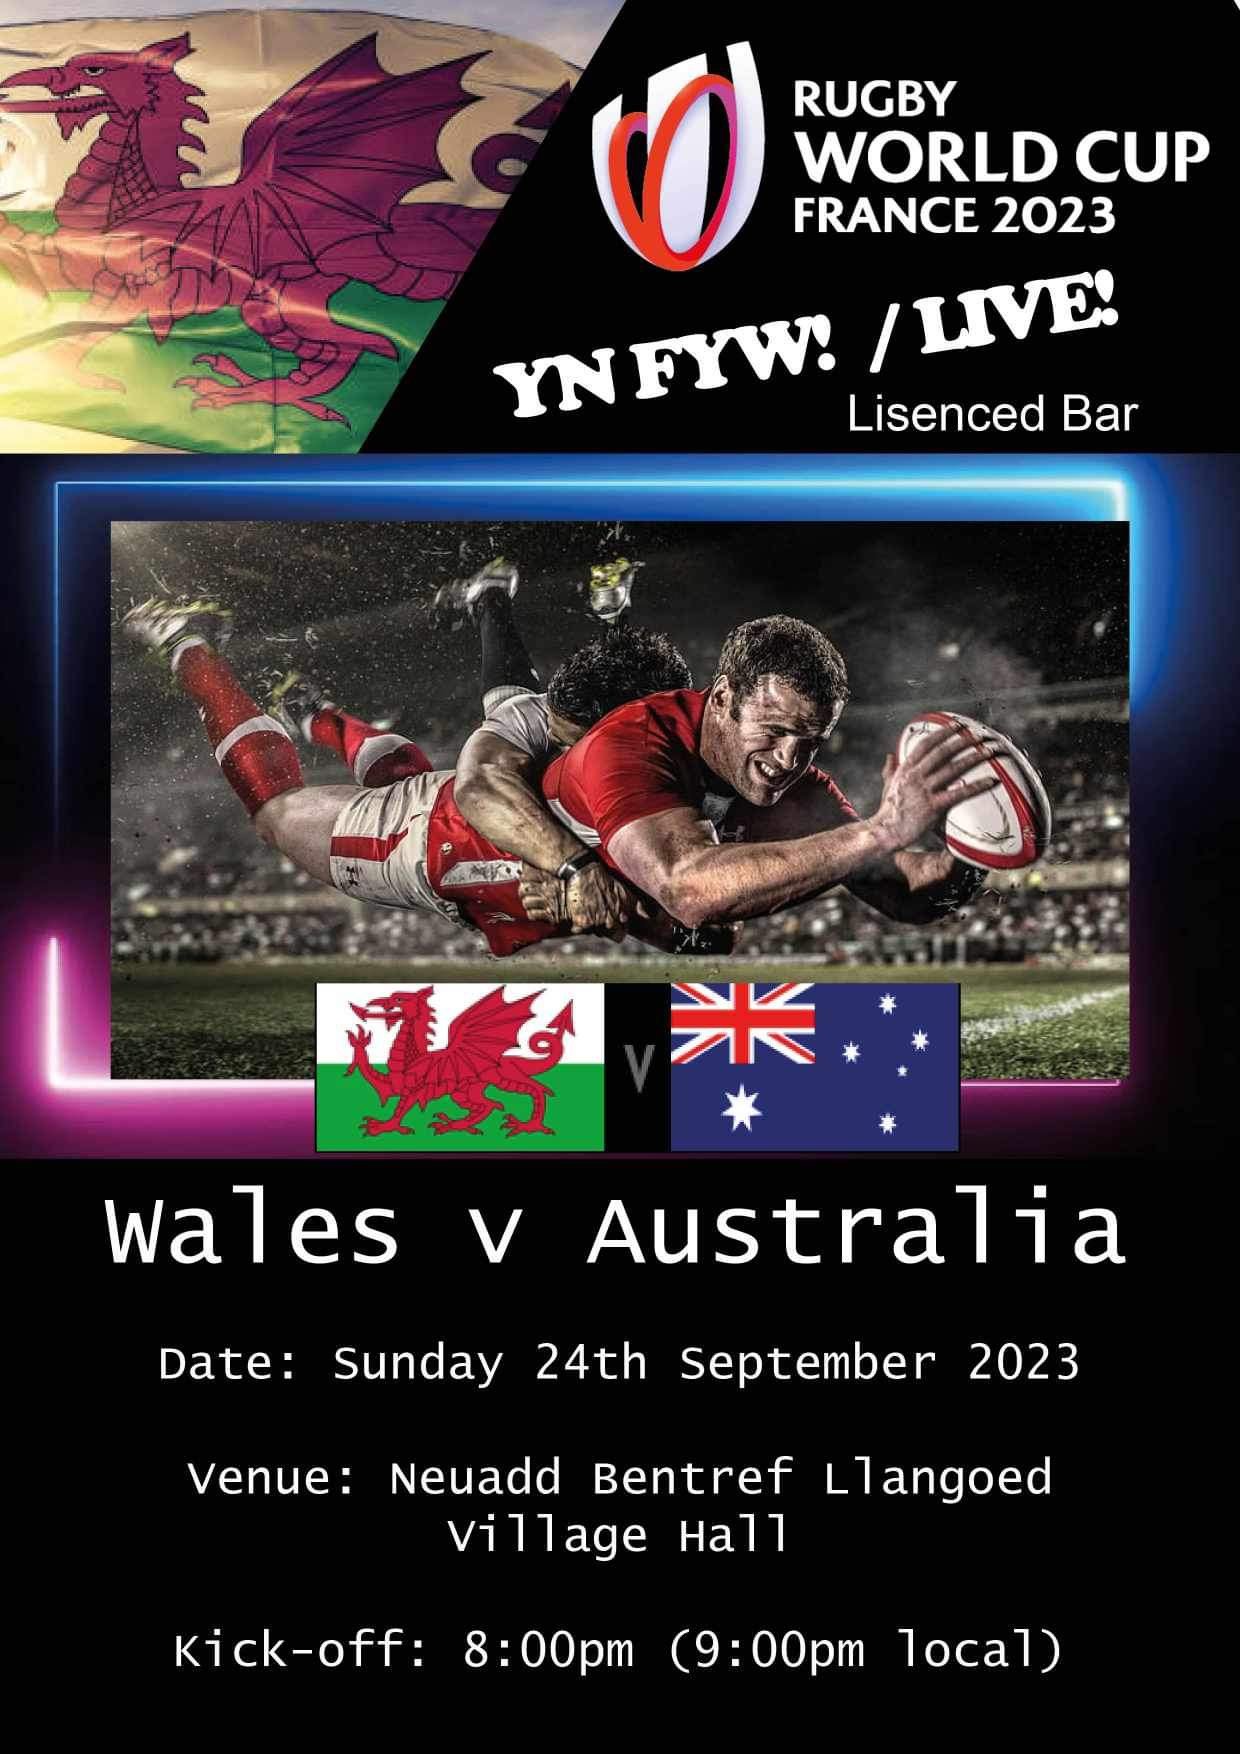 Wales vs Australia